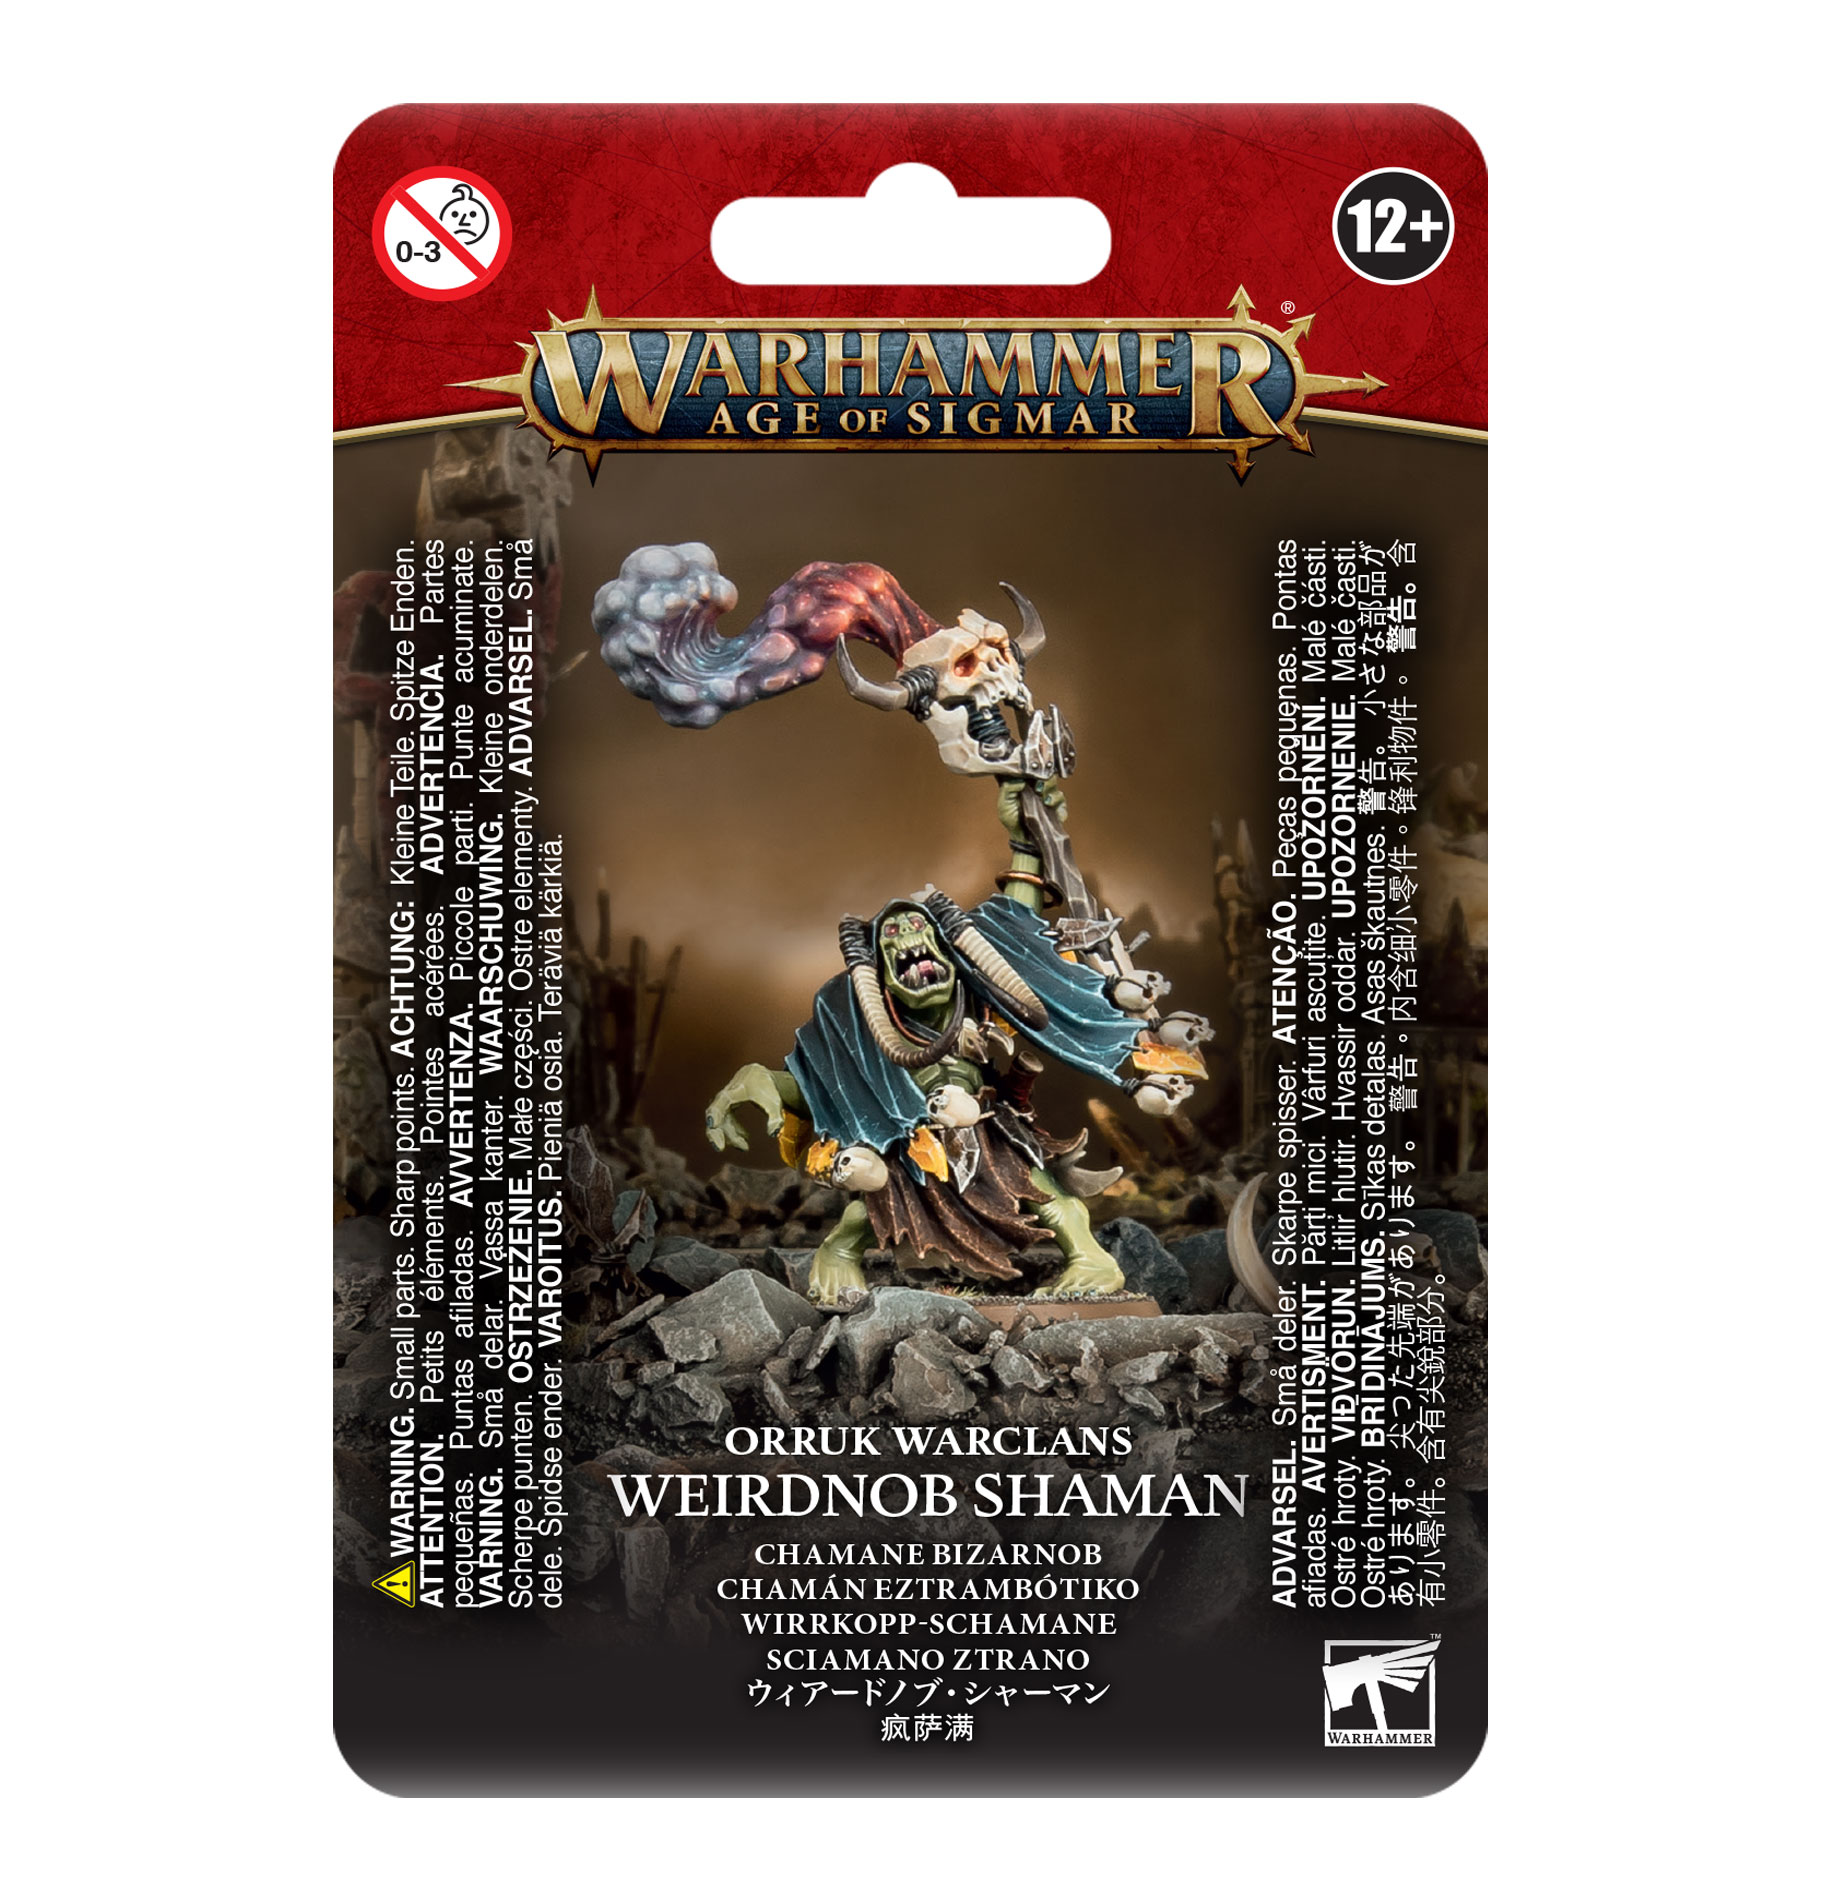 Weirdnob Shaman - 89-27 - Orruk Warclans - Warhammer Age of Sigmar